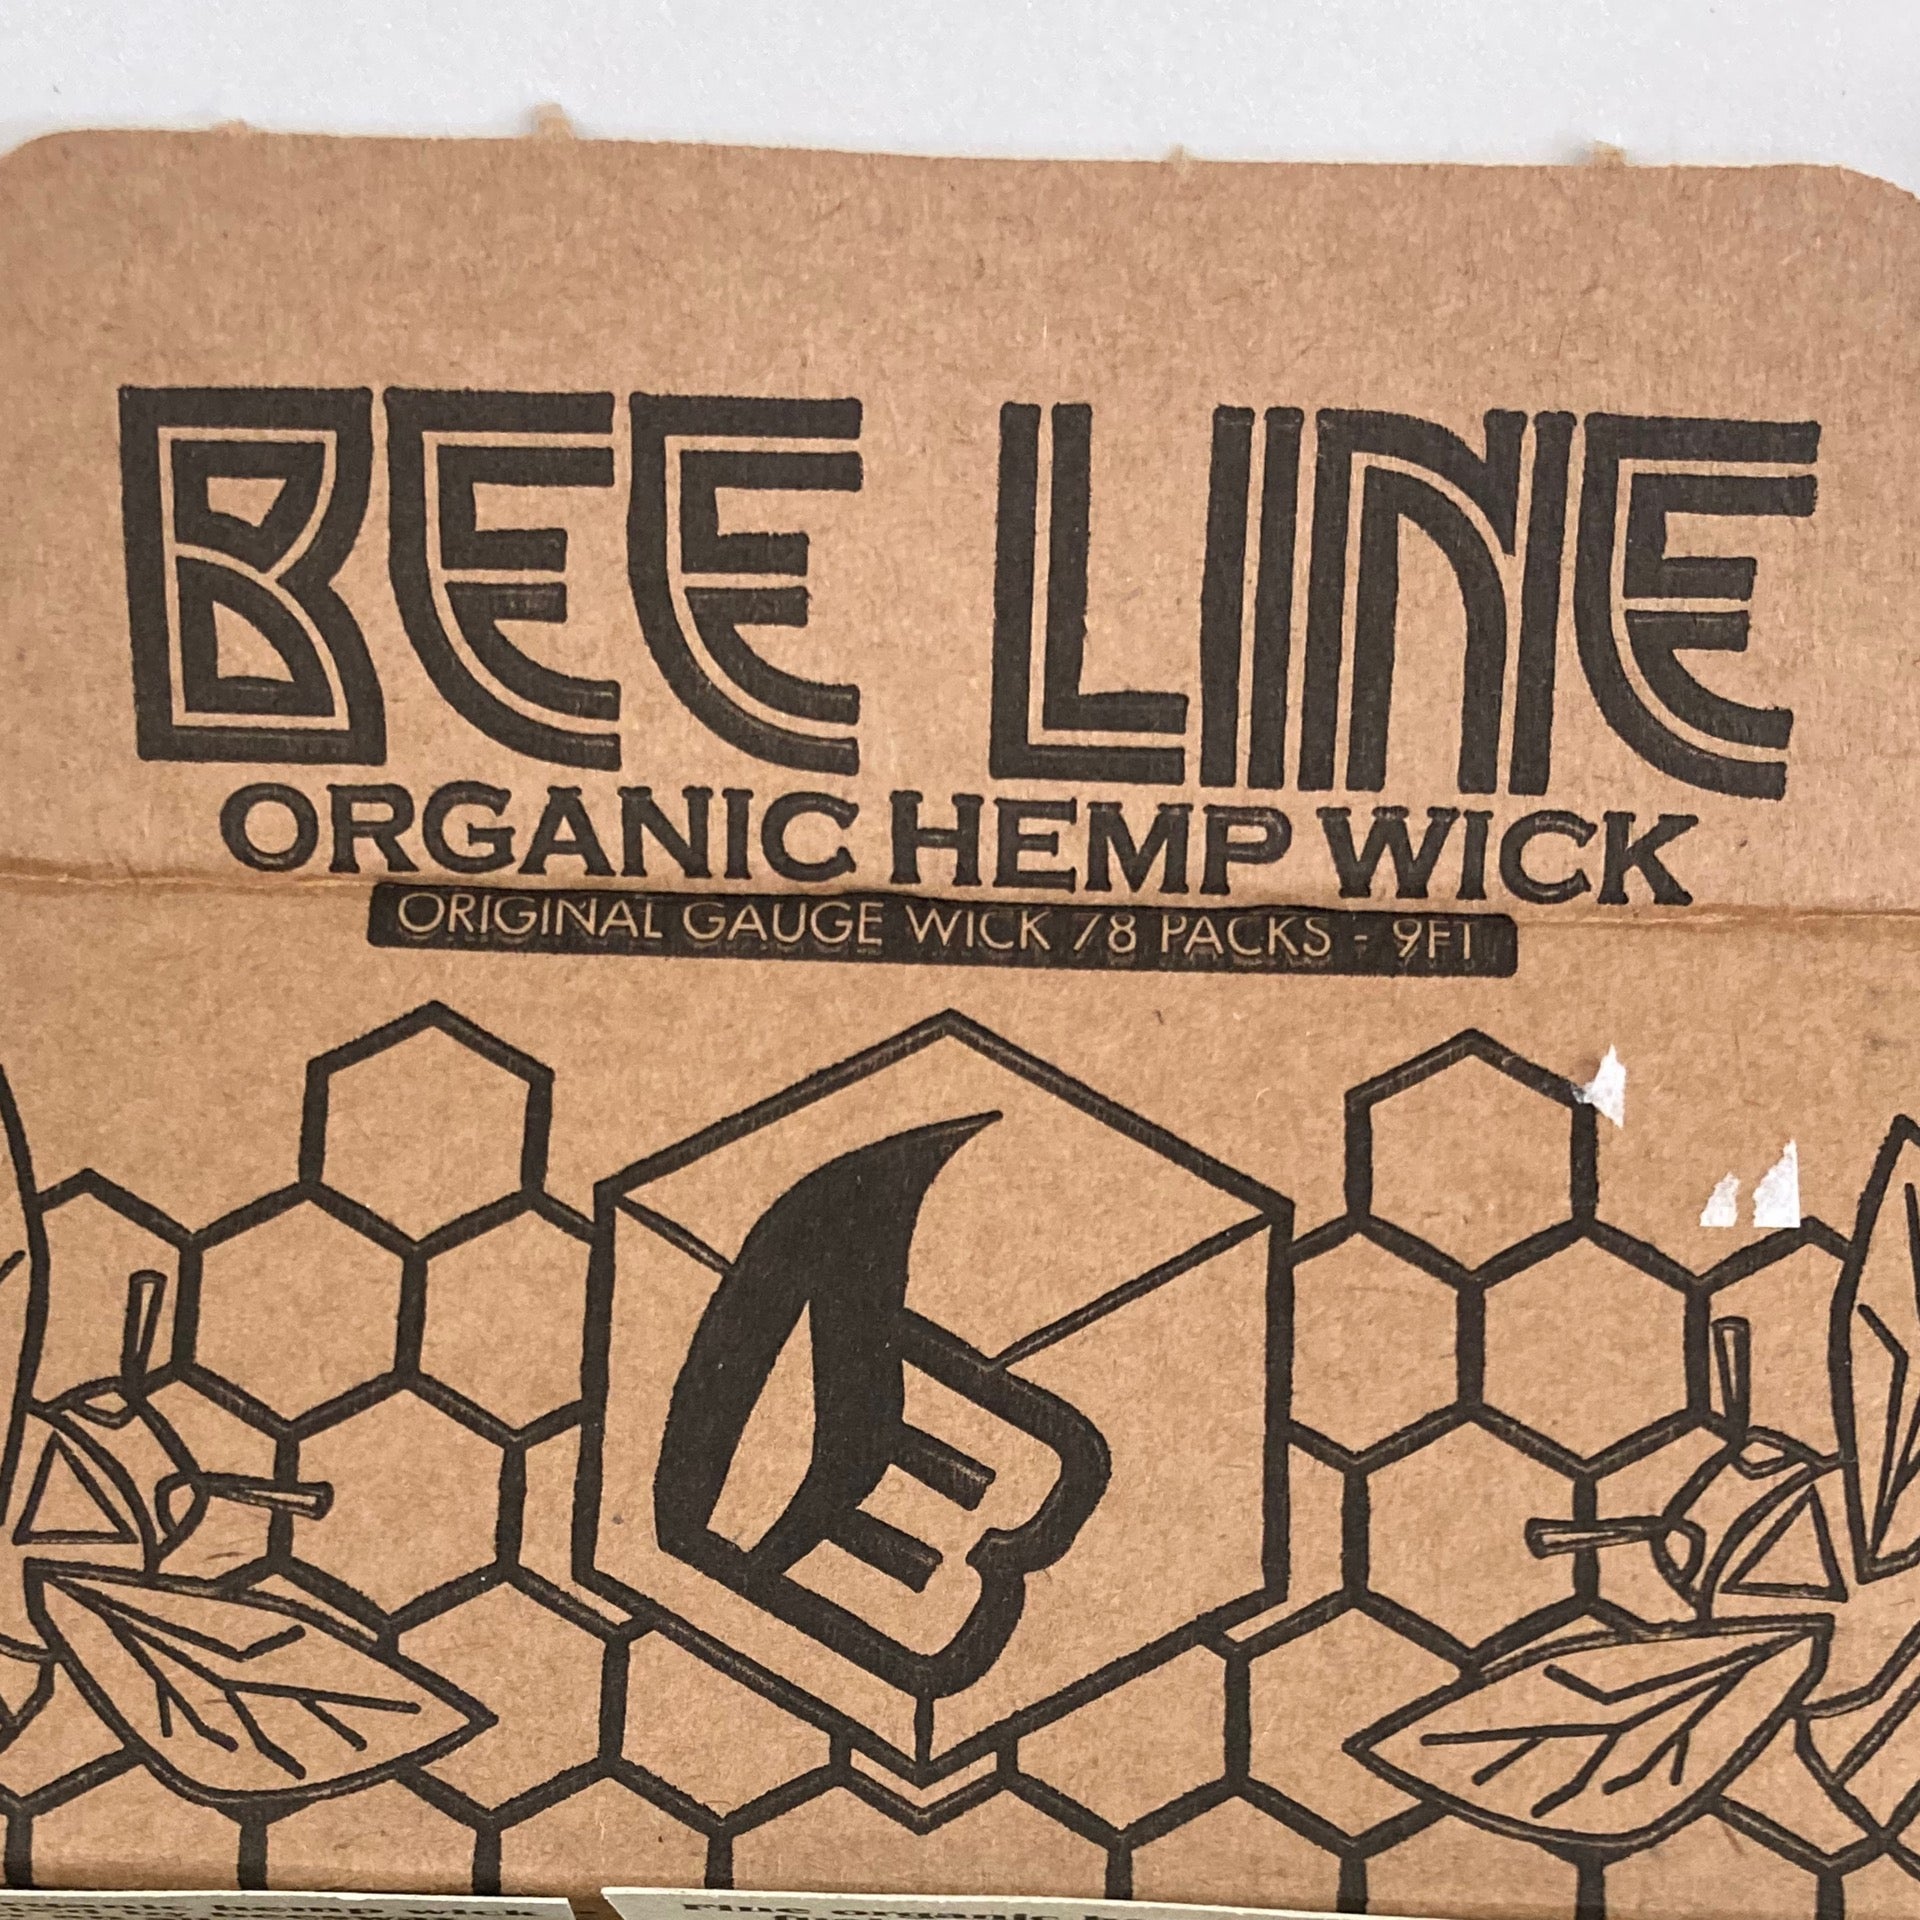 Bee Line, Organic Hemp Wick, Original